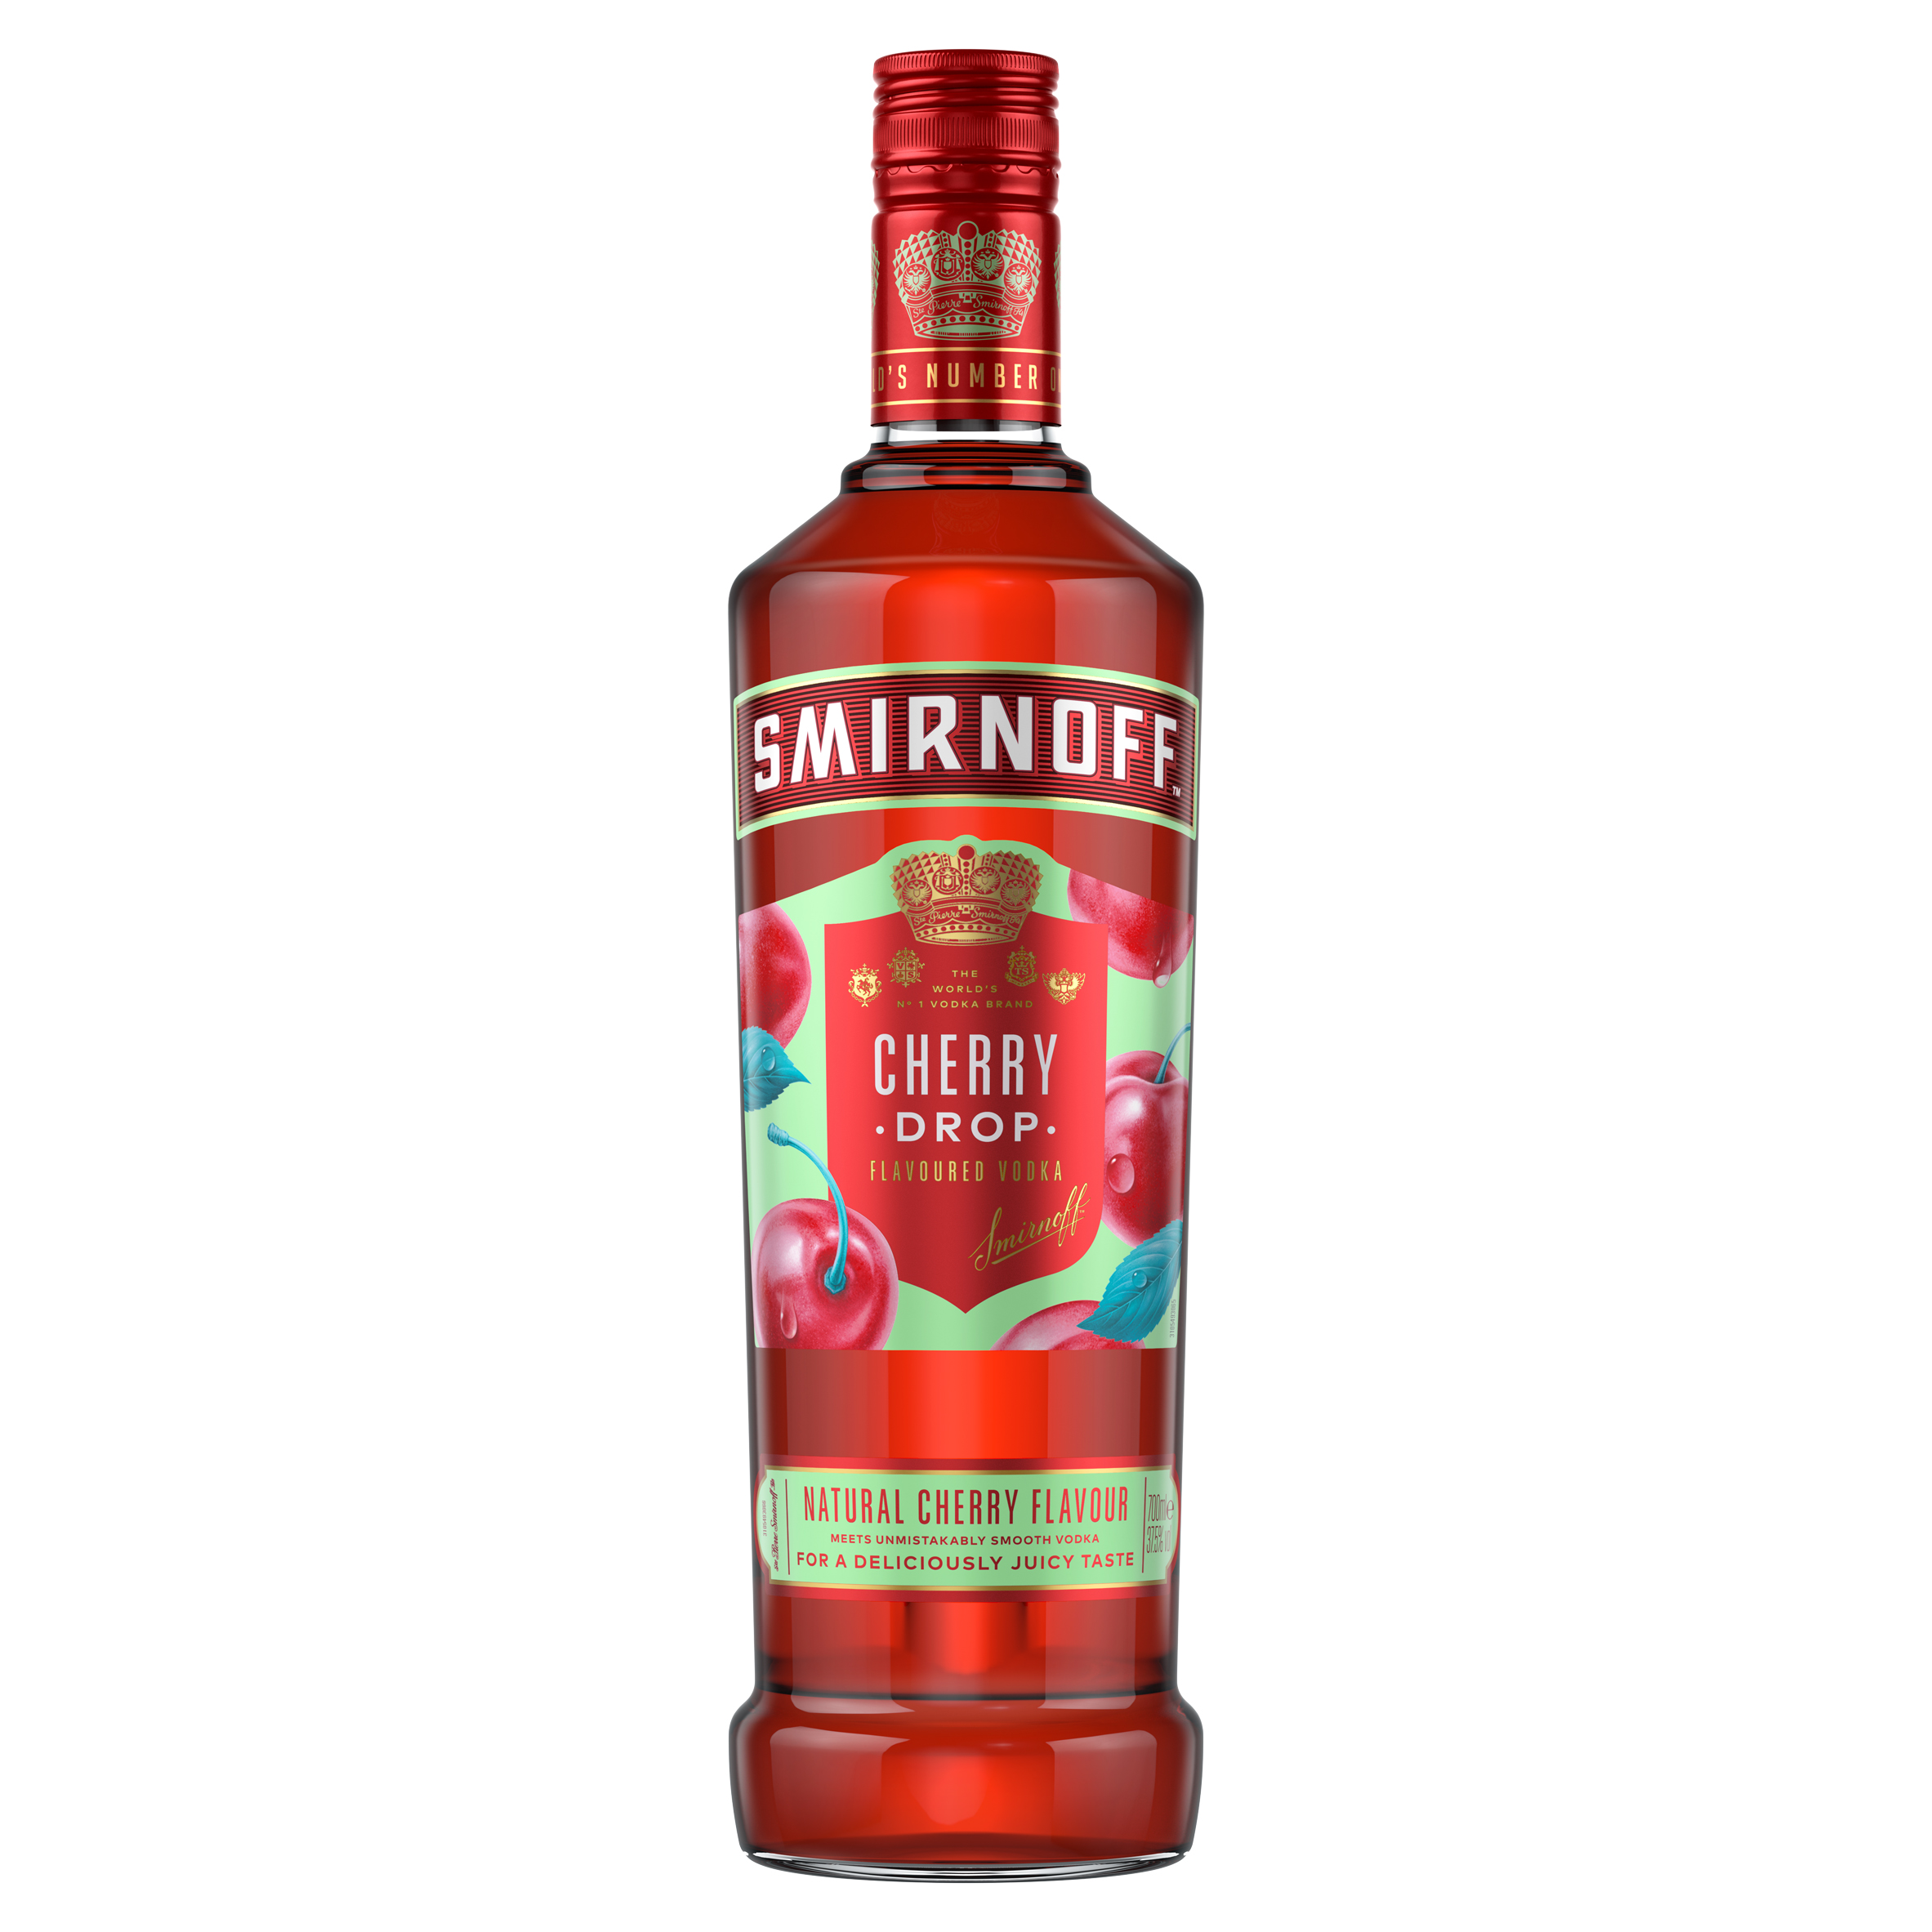 Smirnoff ‘drops’ new cherry-flavoured vodka